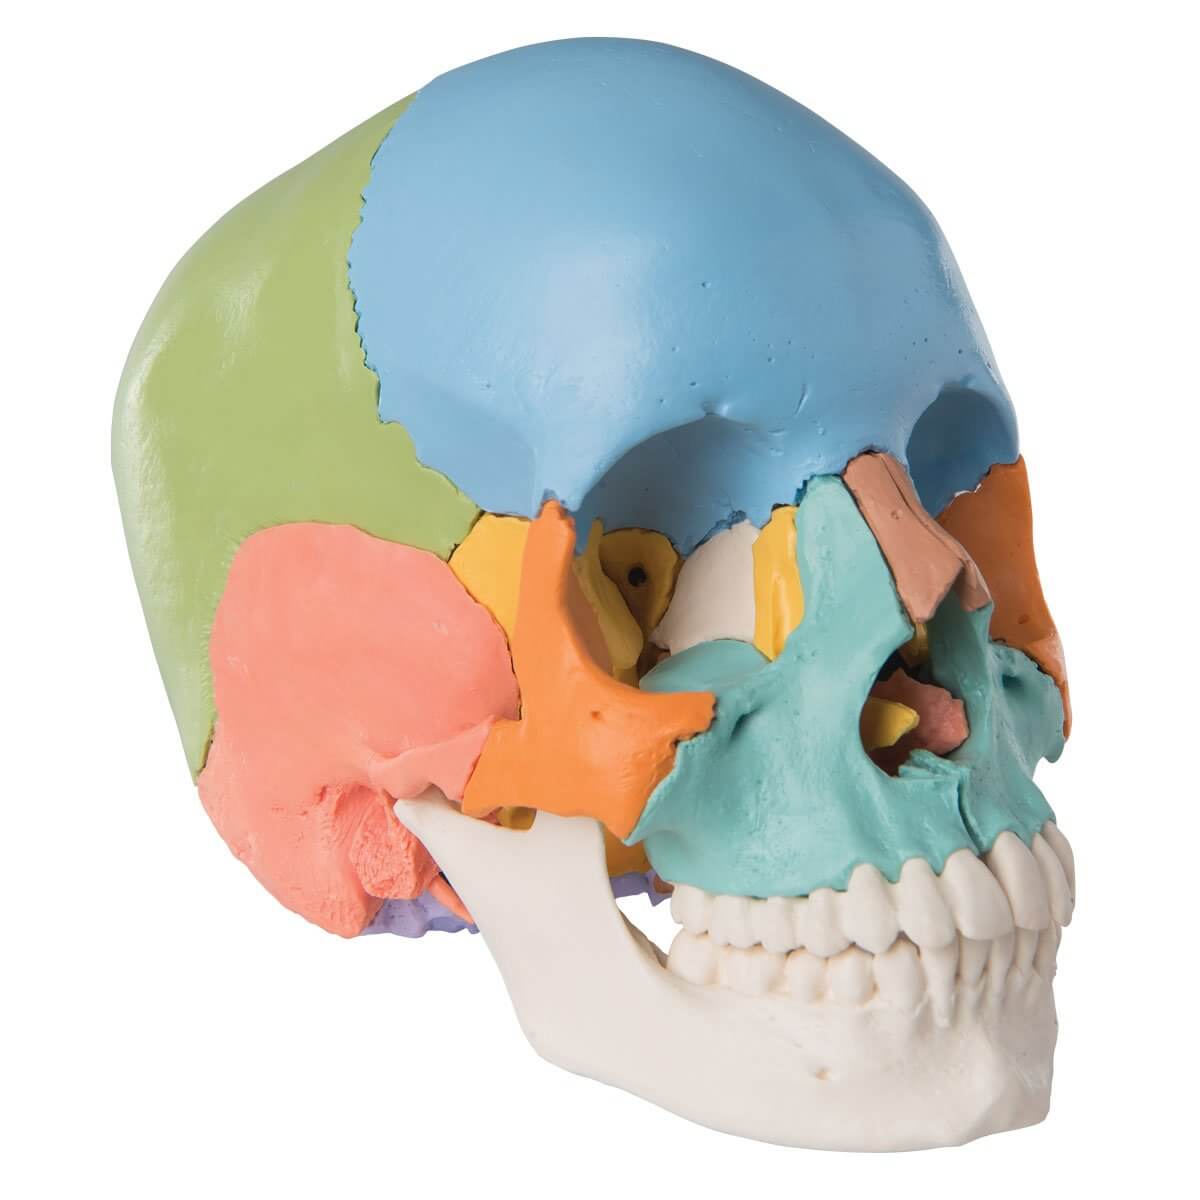 Crâne anatomique – Instrumental care